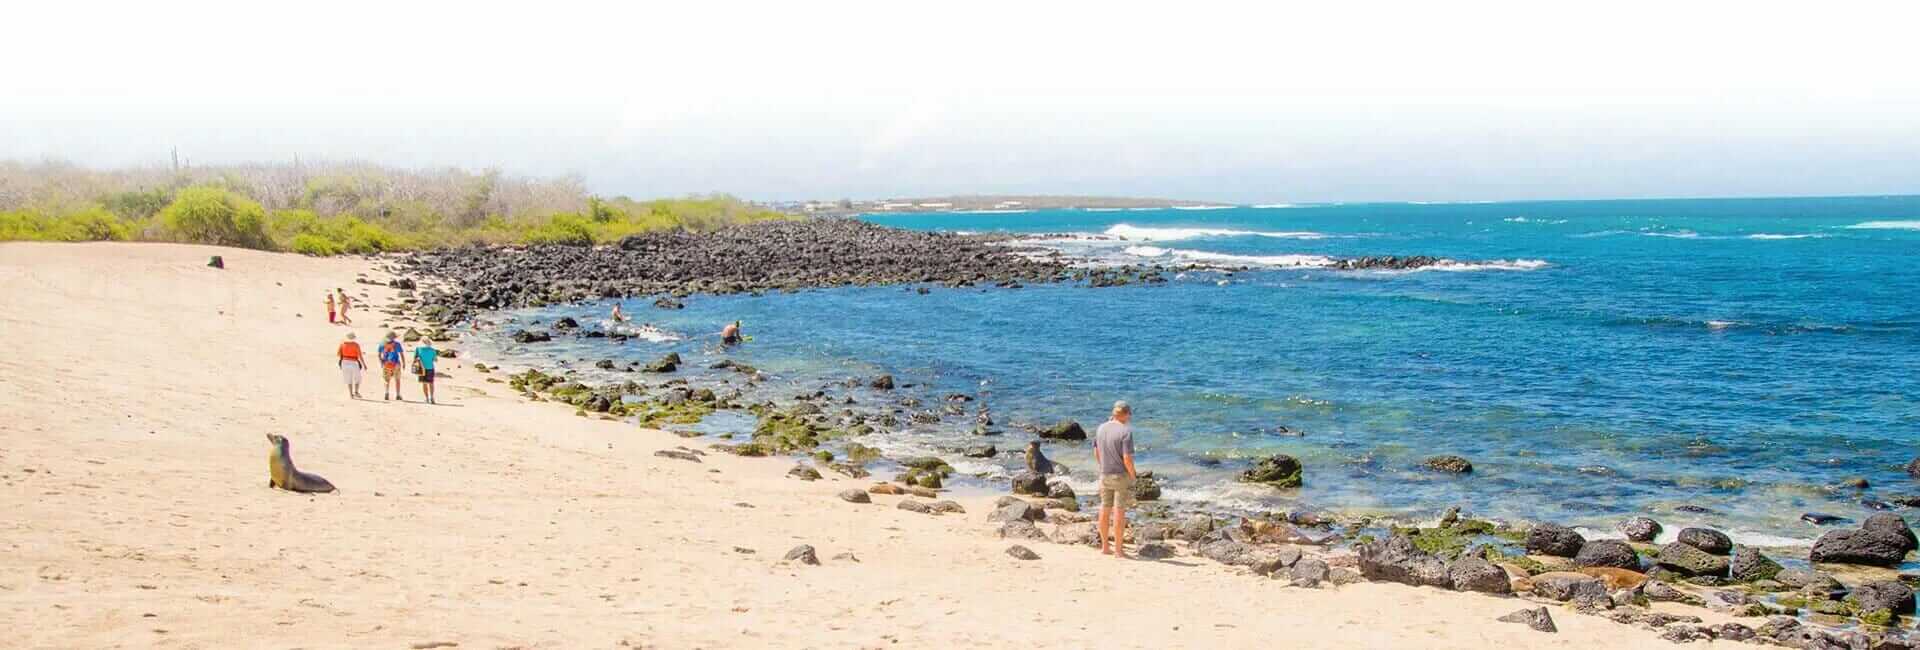 Galapagos eilanden gouden strand